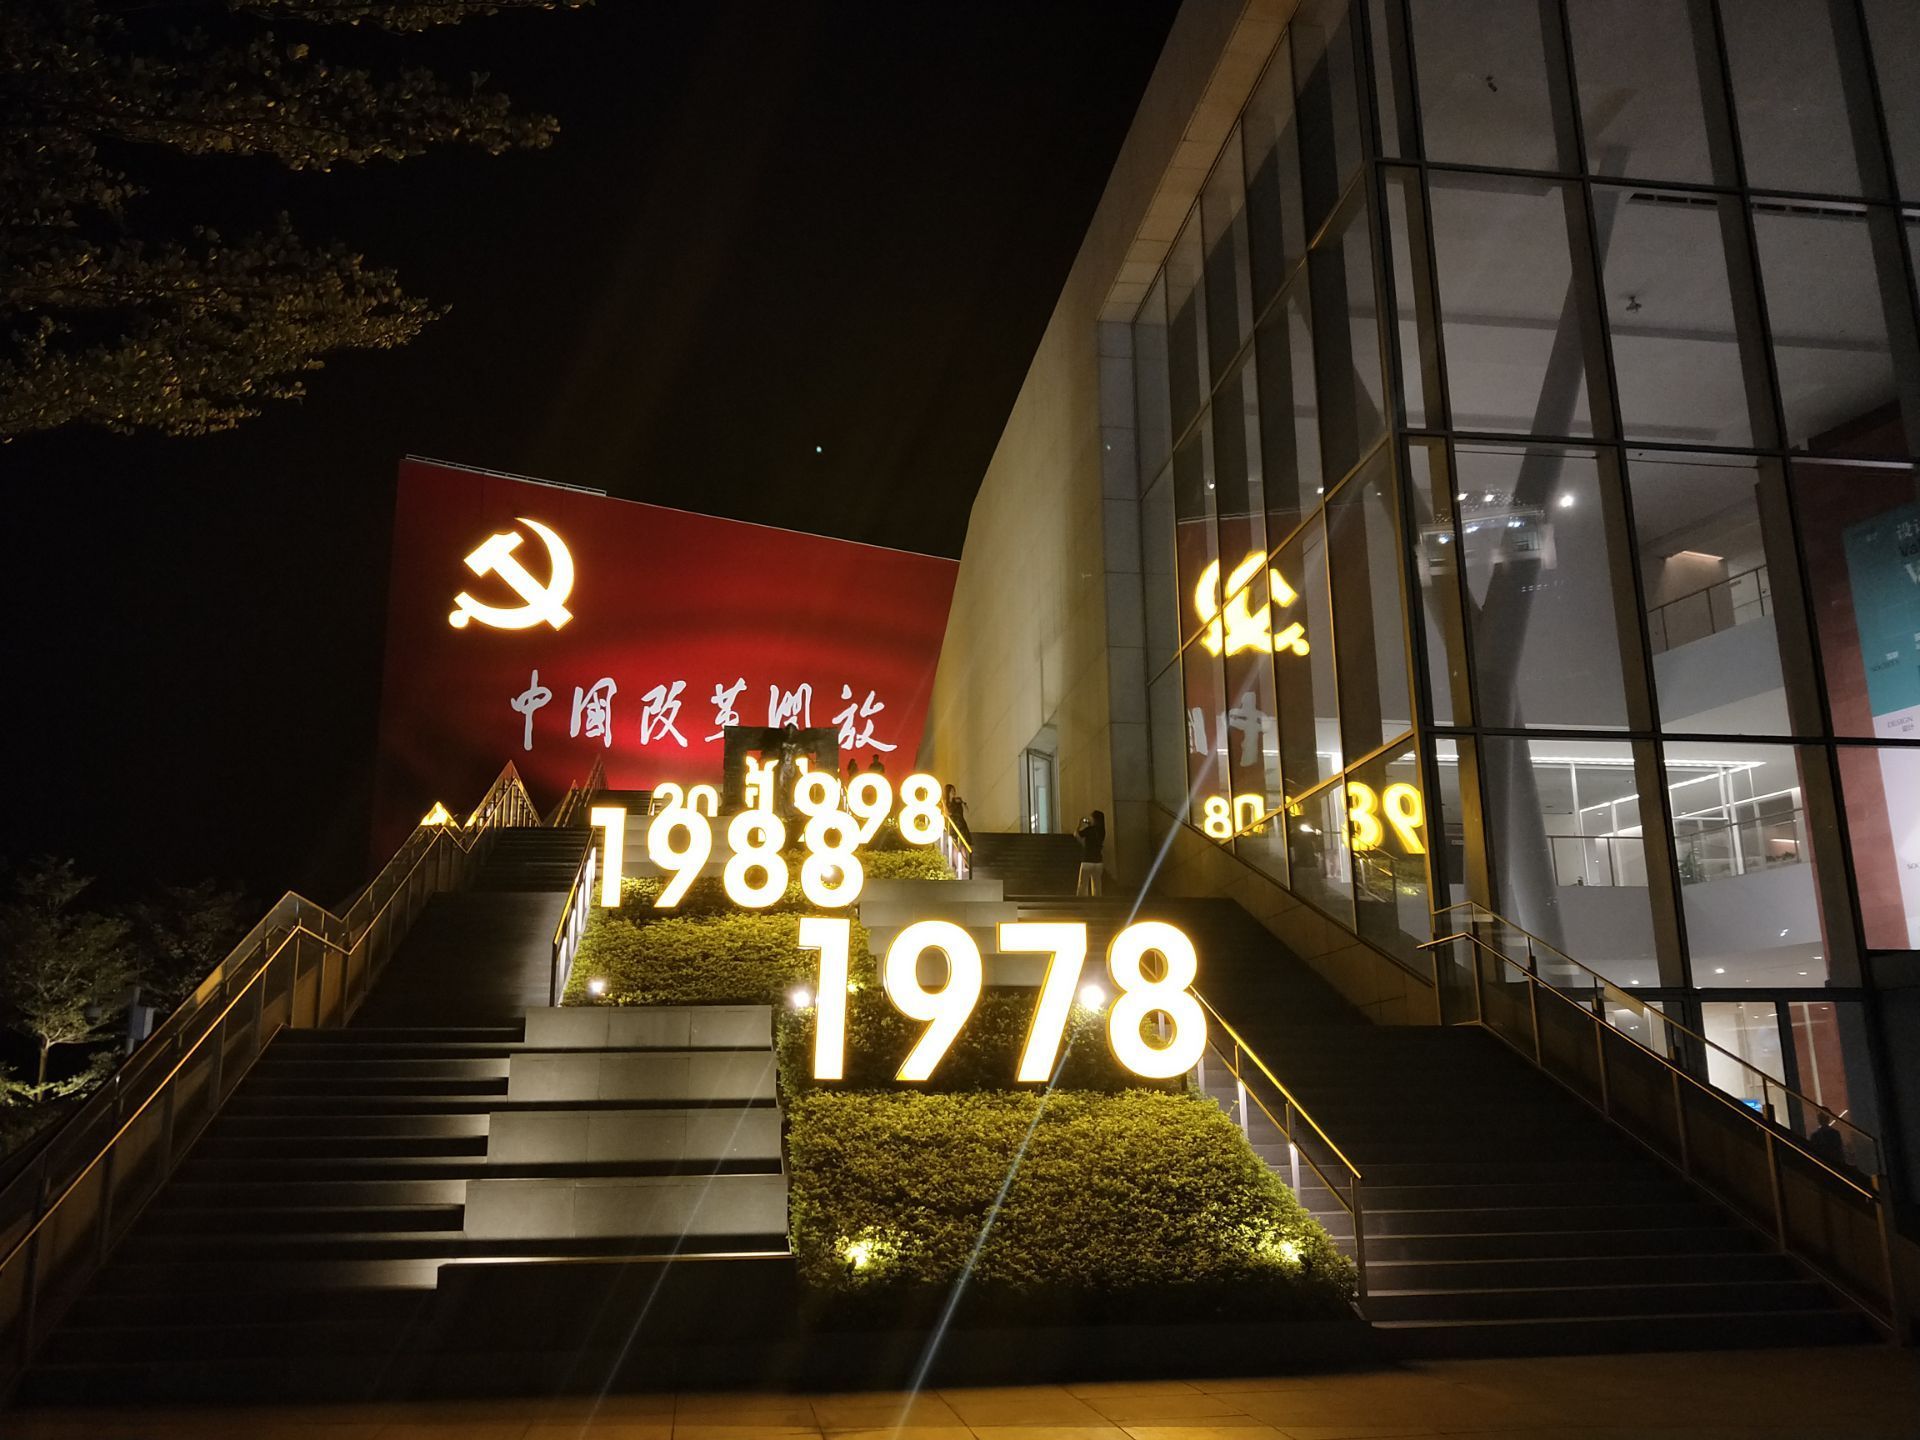 中国改革开放蛇口博物馆